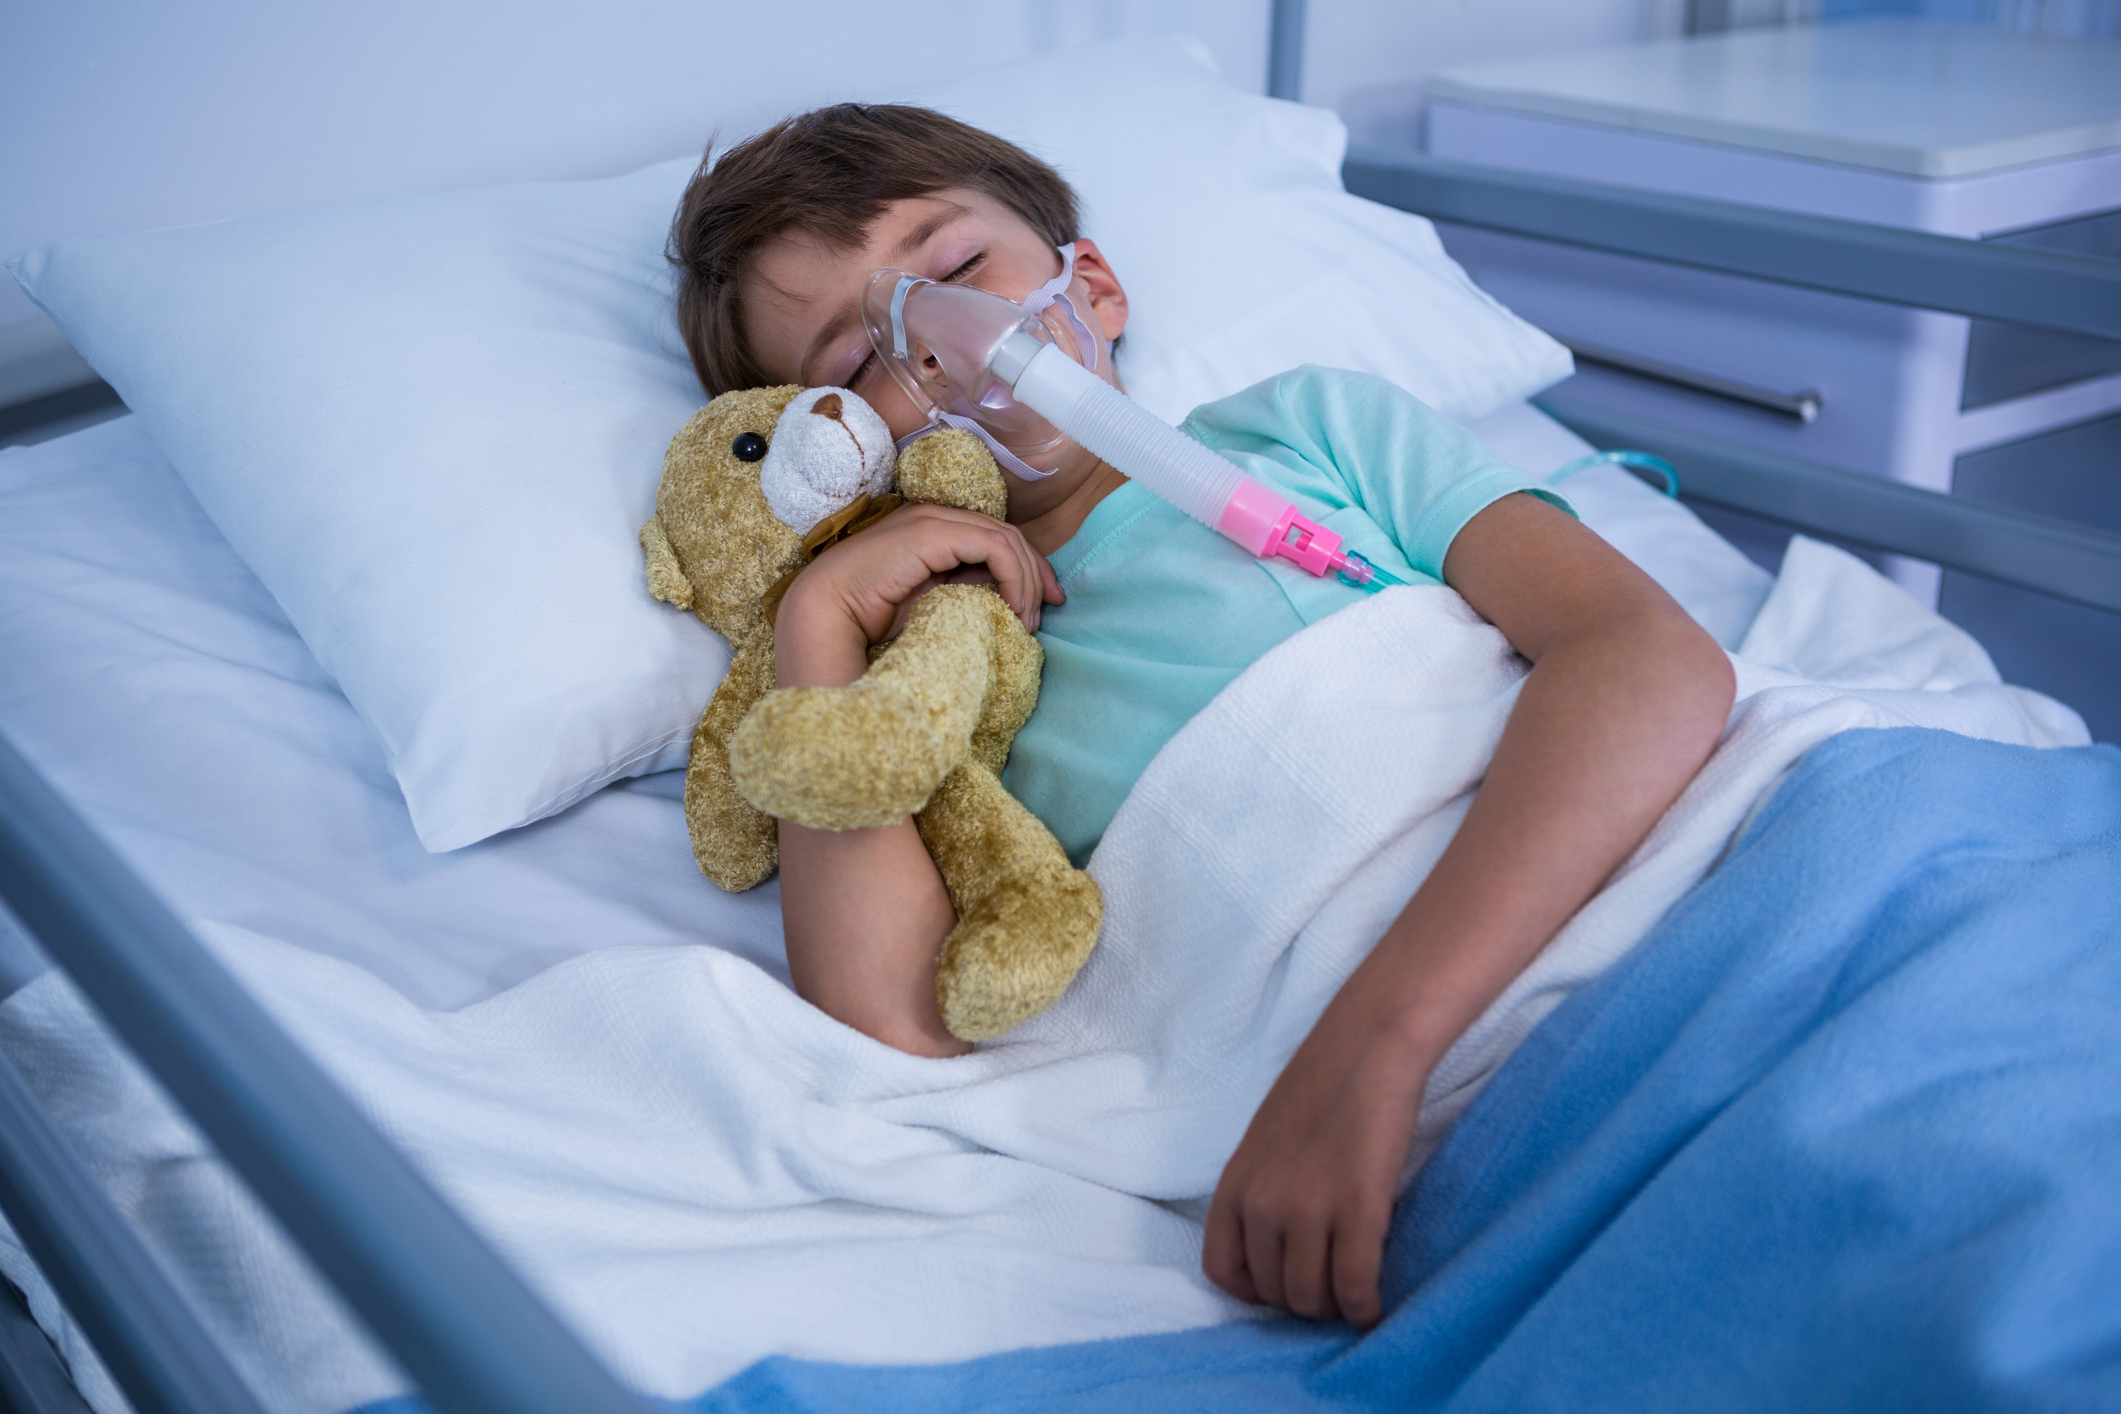 Ребенок в кислородной маске в больнице. Ребенок болеет. Кислородная маска для младенцев. Кислородная подушка для детей. Заболела ребенку 2 недели